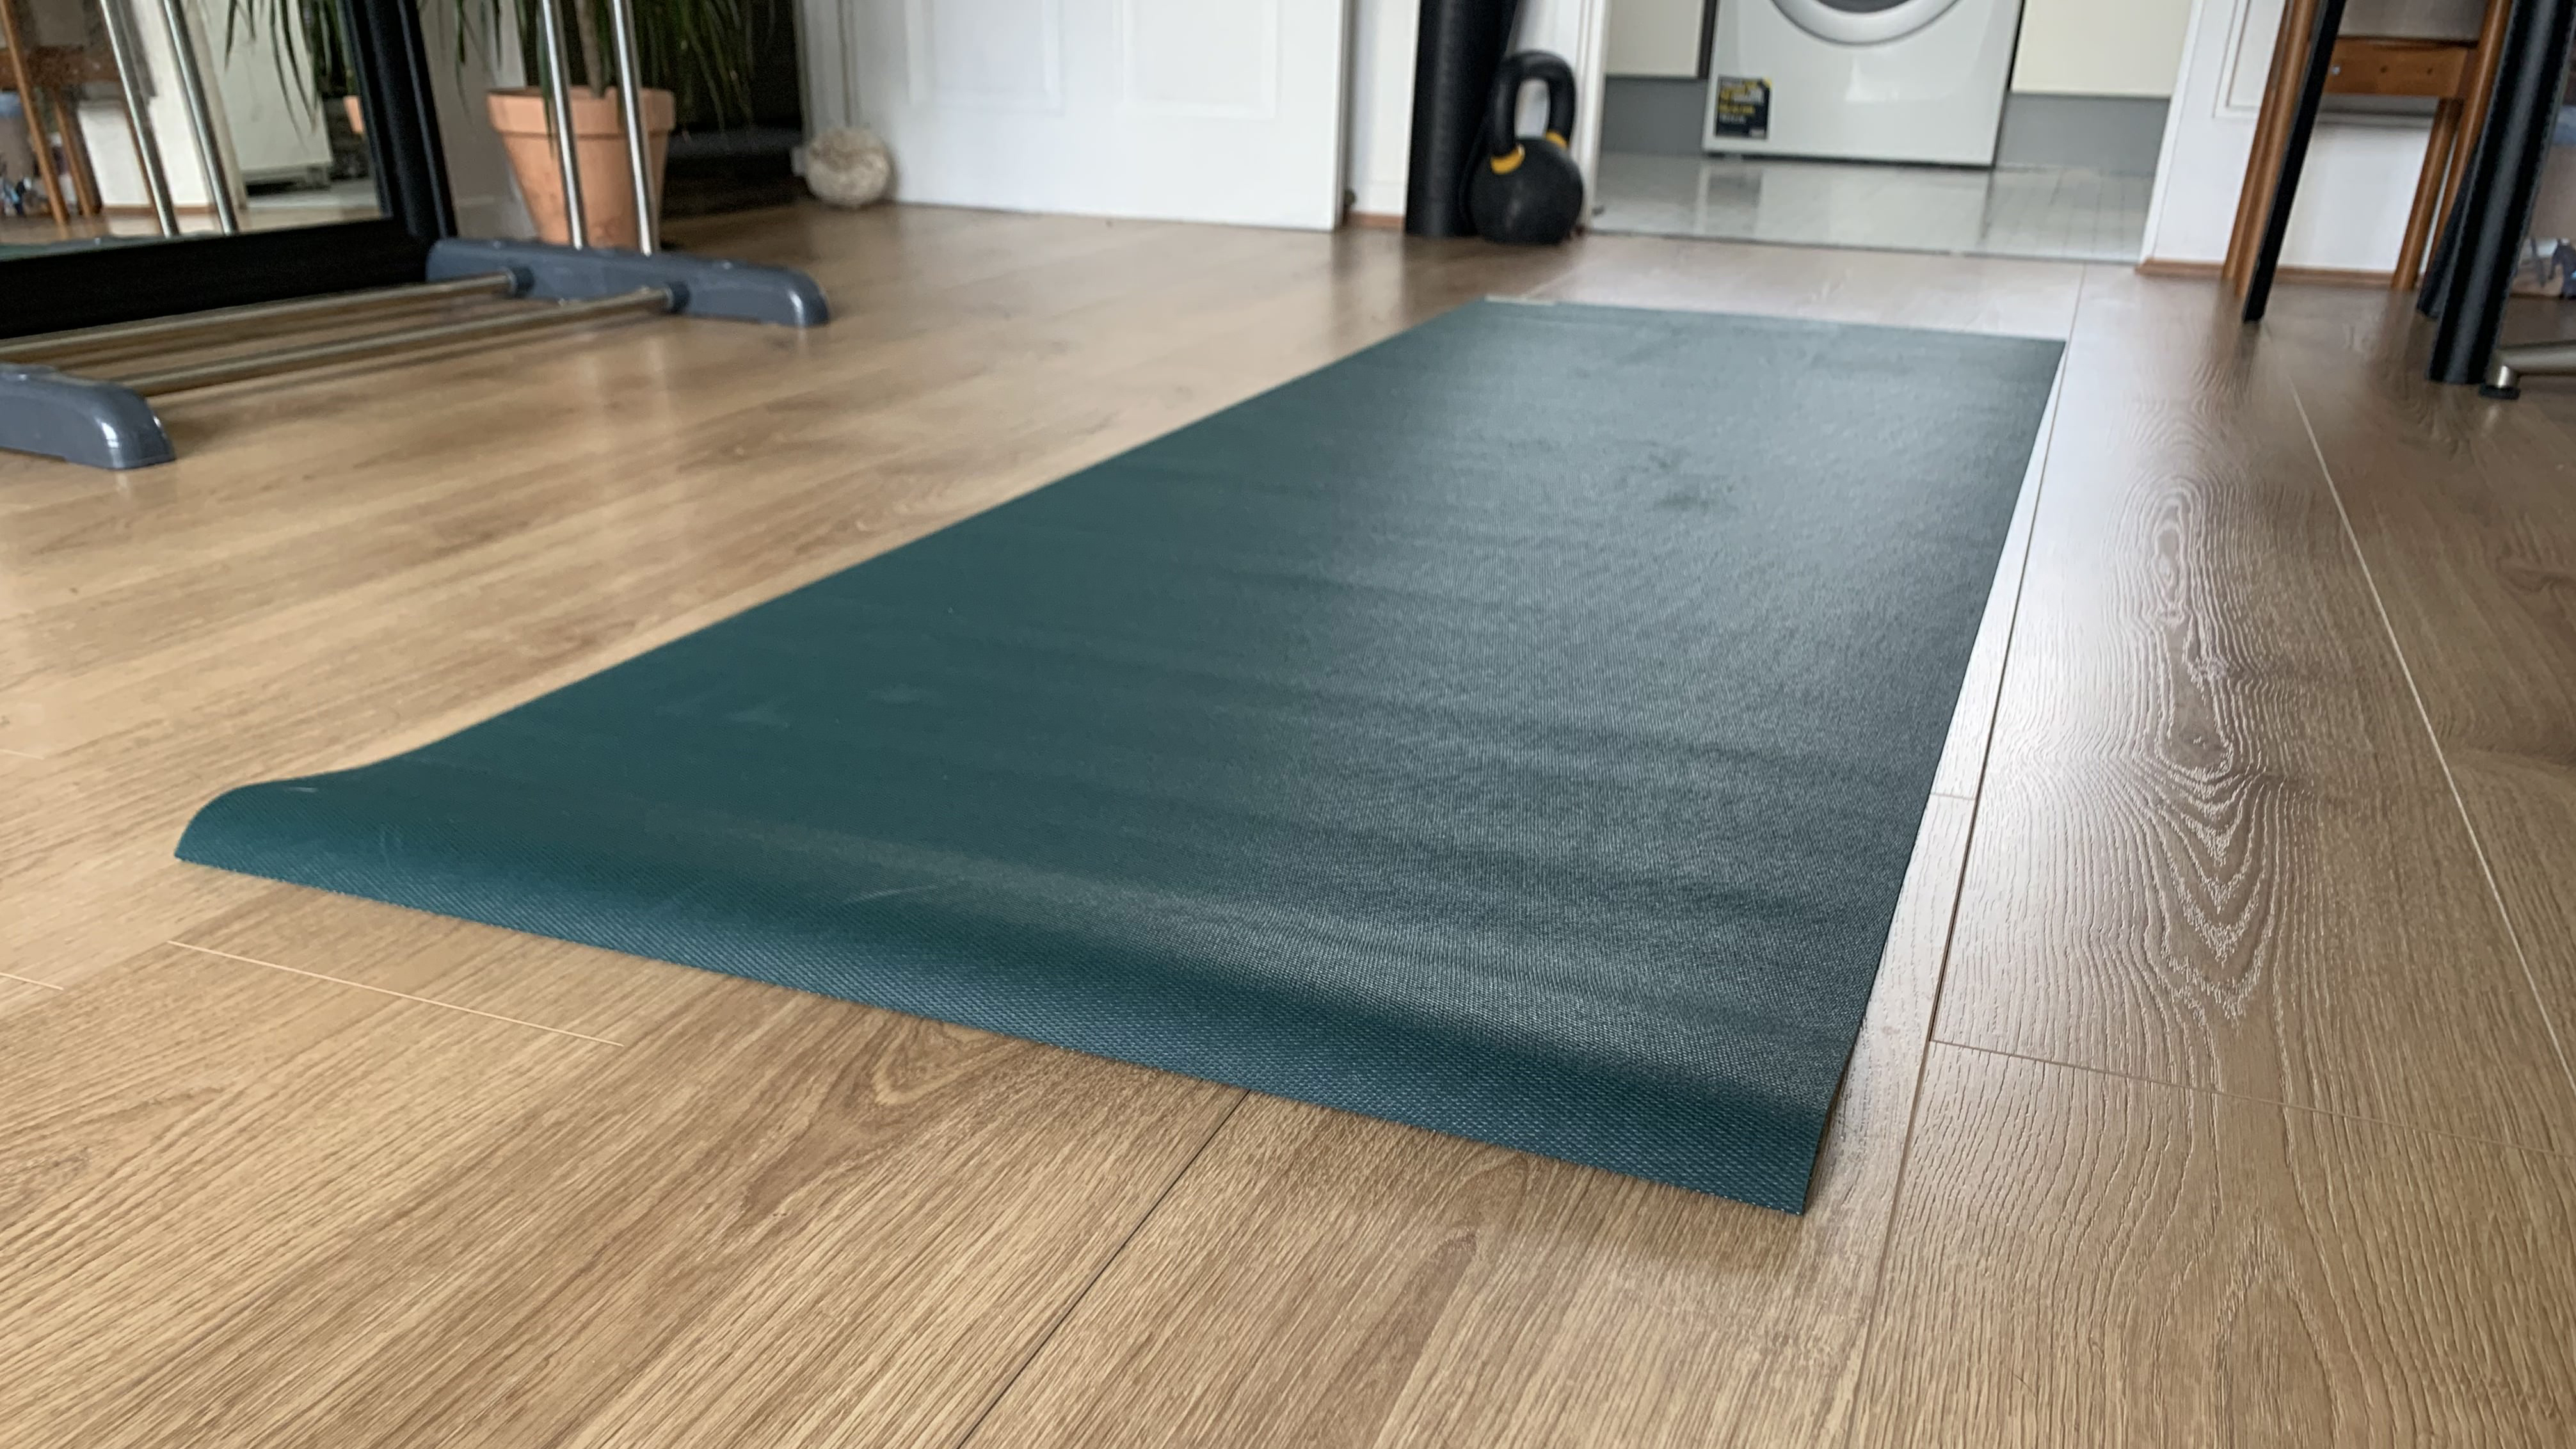 Jade Harmony Yogamatte auf Holzboden ausgerollt, bereit zum Testen